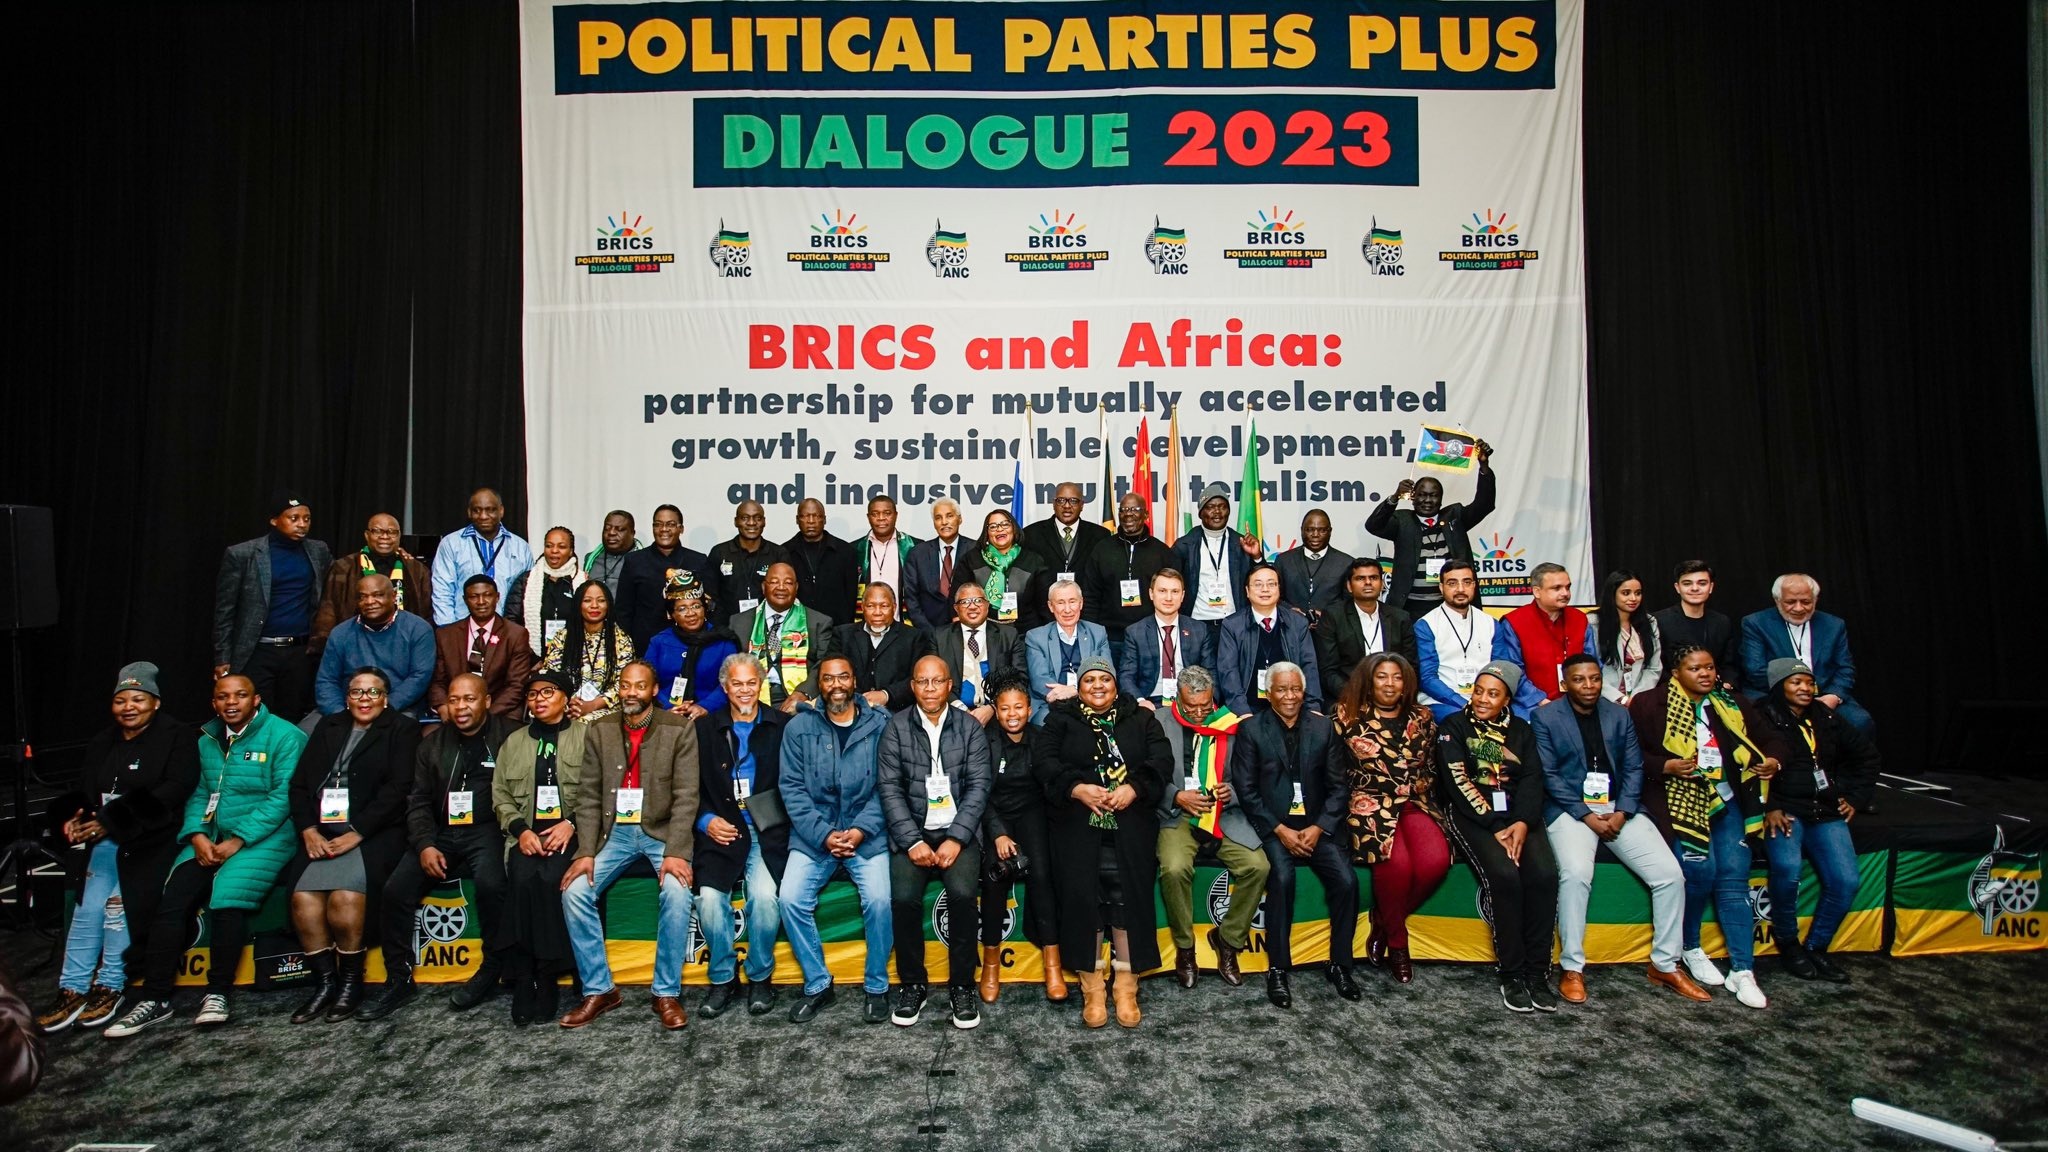 Накануне в Йоханнесбурге завершился форум «Диалог политических партий БРИКС плюс 2023», который проходил в ЮАР с 18 по 21 июля. 